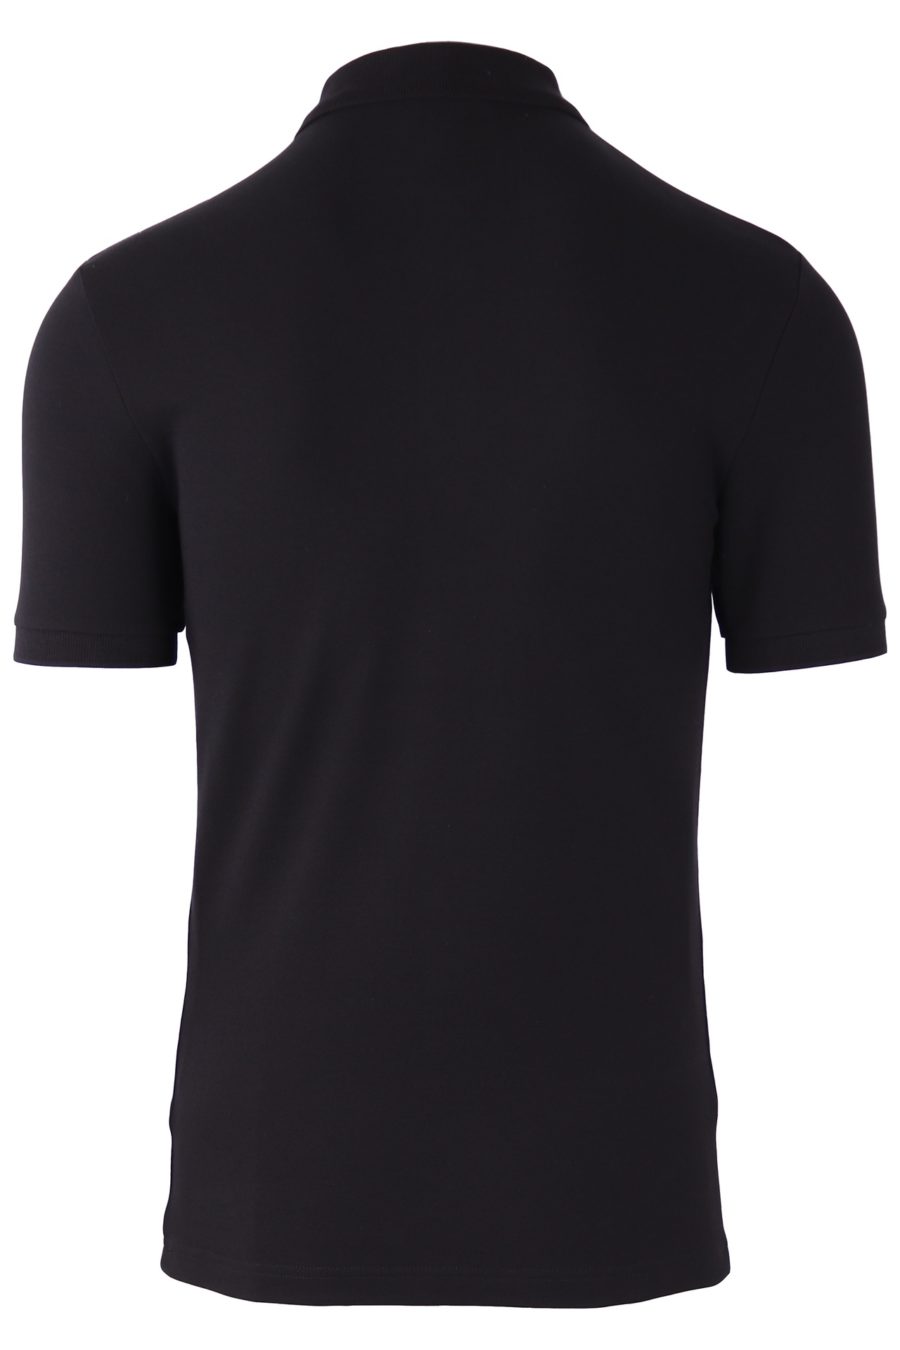 T-shirt de roupa interior Balmain preta com logótipo branco - 6ce33c6e13bb416bd67925505ffdd82219817b8e 1